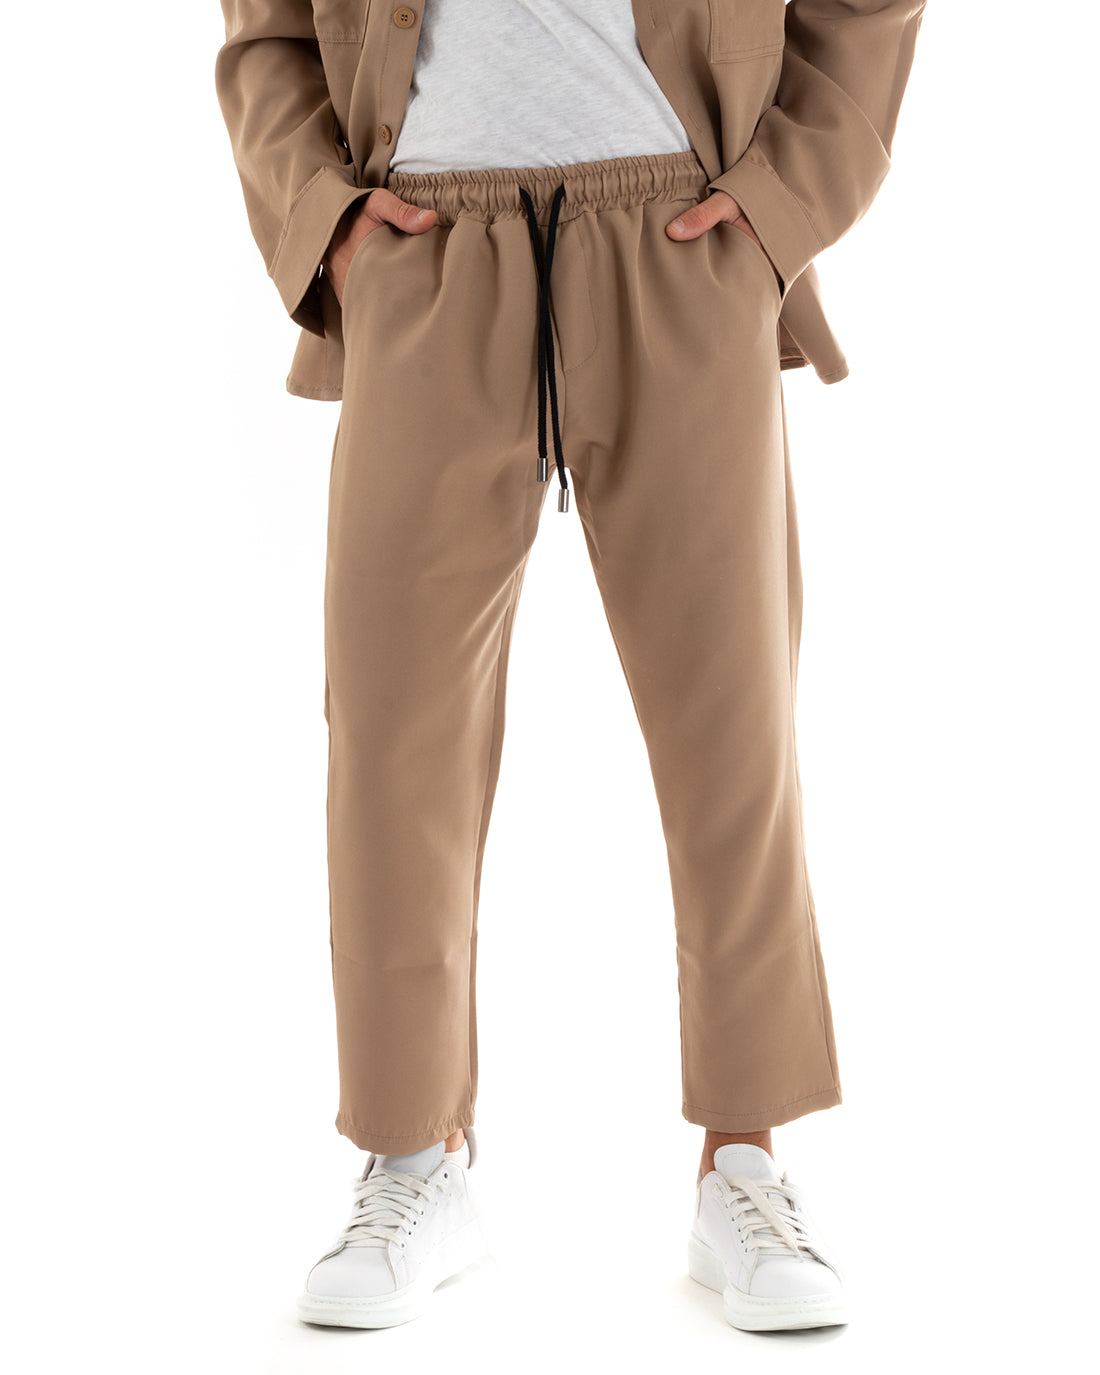 Completo Set Coordinato Uomo Viscosa Camicia Con Colletto Pantaloni Outfit Camel GIOSAL-OU2386A